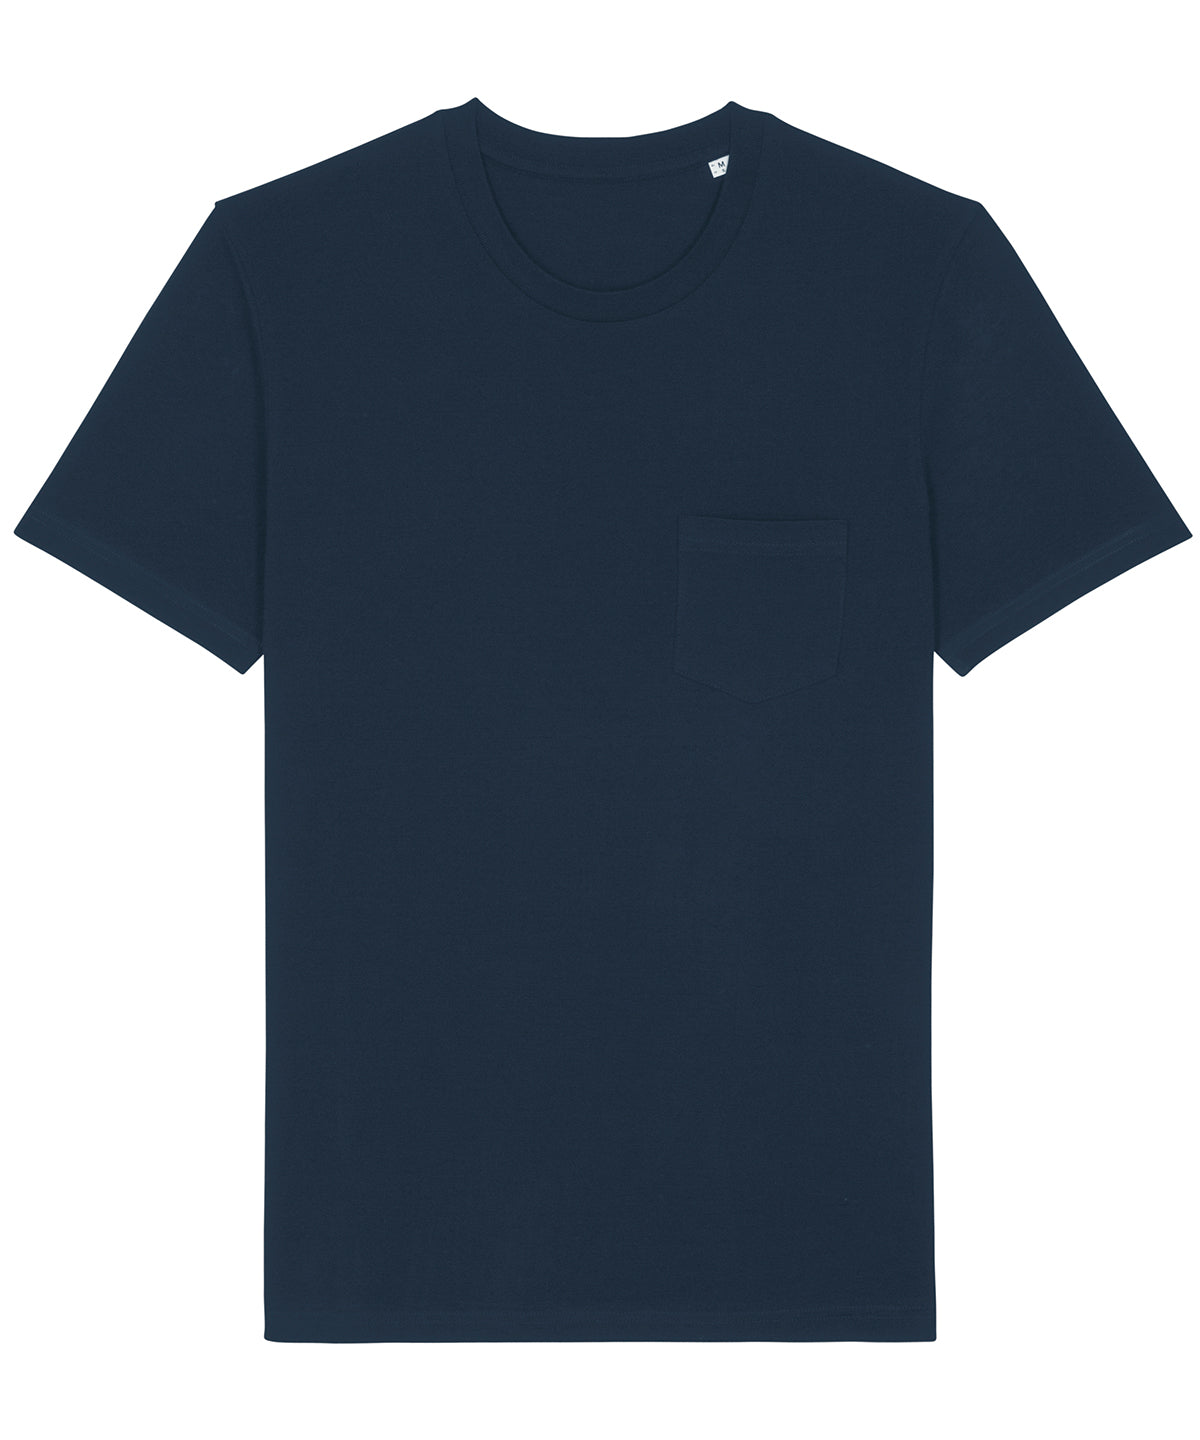 Essential Organic Pocket T-Shirt (Mens/Unisex)